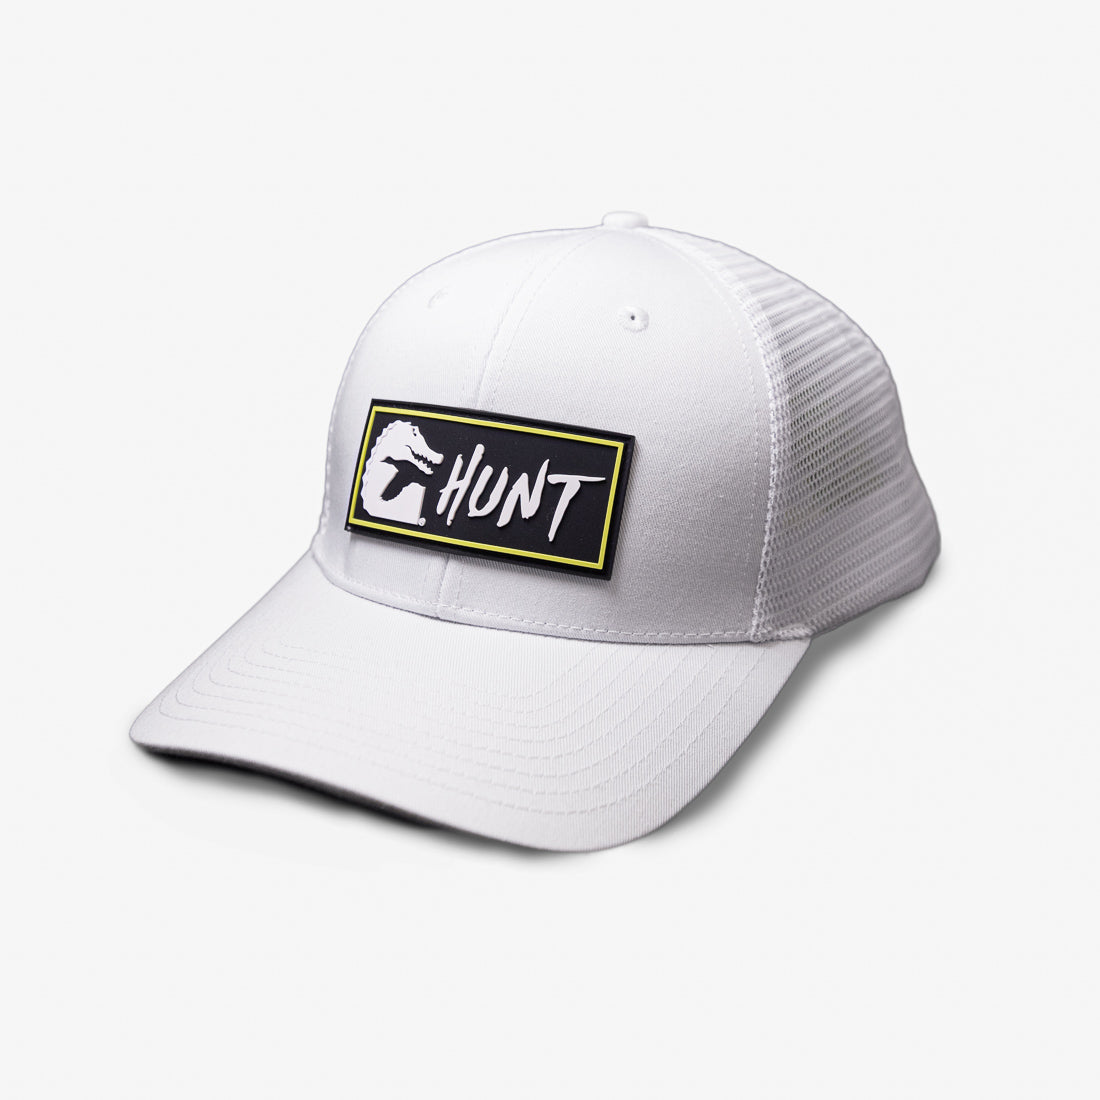 Patch Hat | Hunt